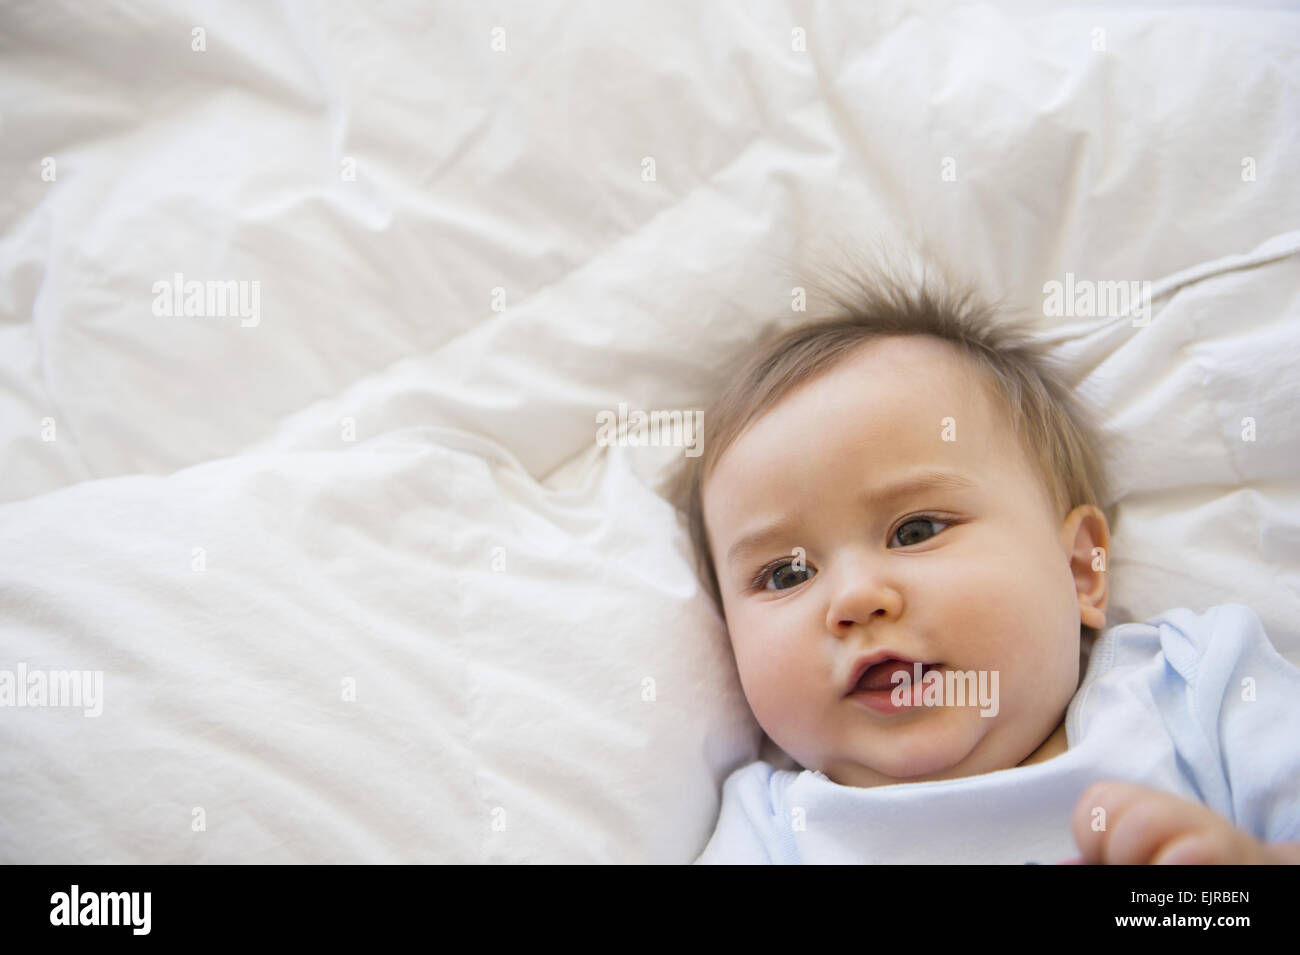 Cerca de raza mixta bebé acostado en la cama Foto de stock